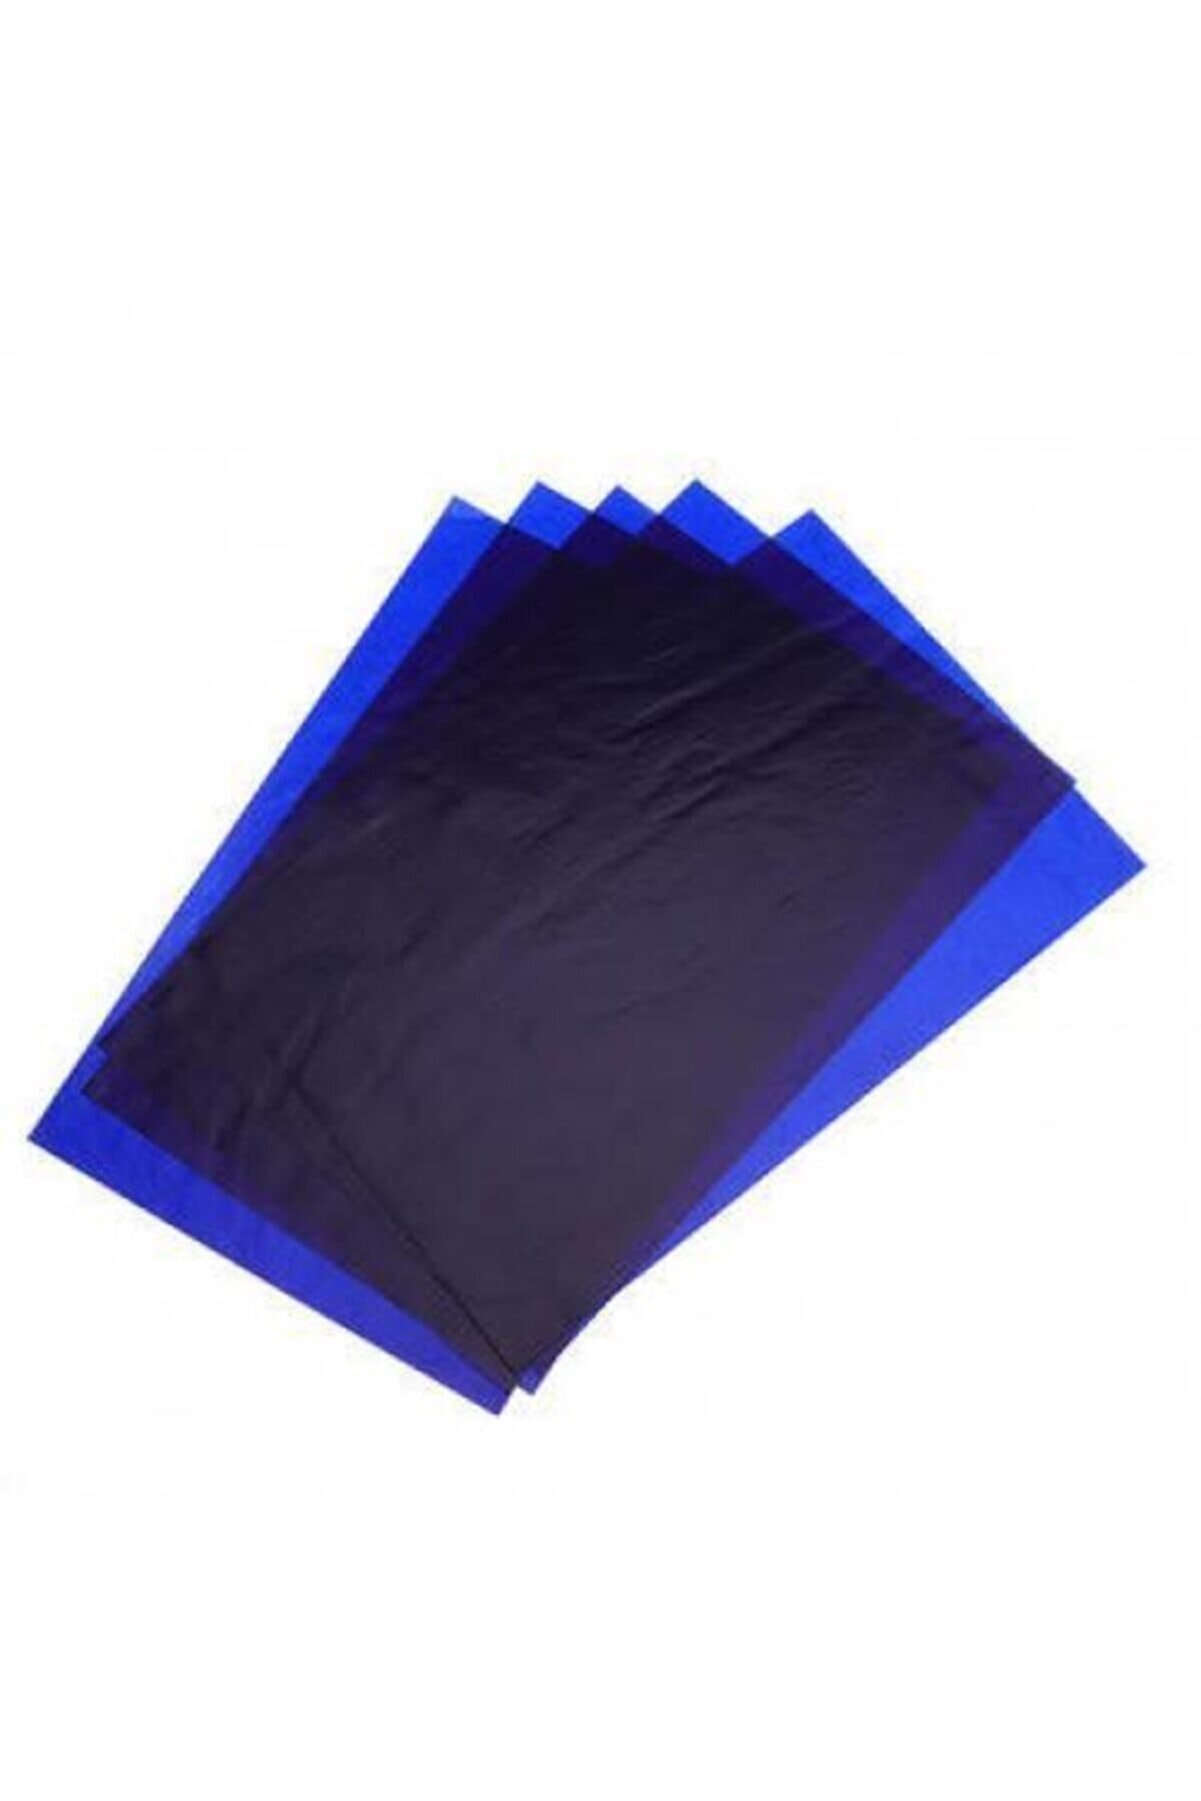 Monopol Karbon Kağıdı Karbon Kağıdı Mavi Renk 10 Adet